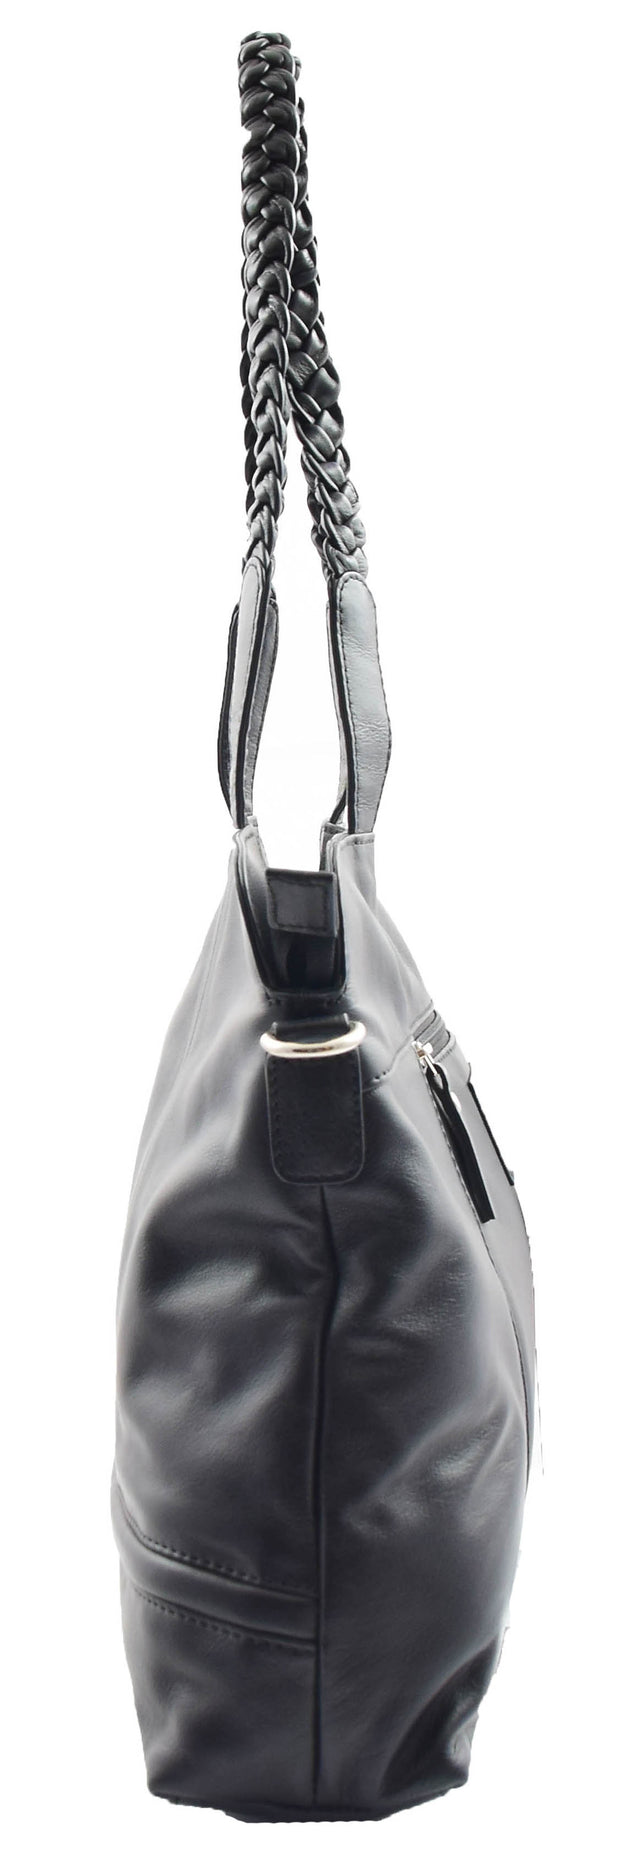 Womens Real Black Leather Bag Top Handle Shoulder Handbag Karen